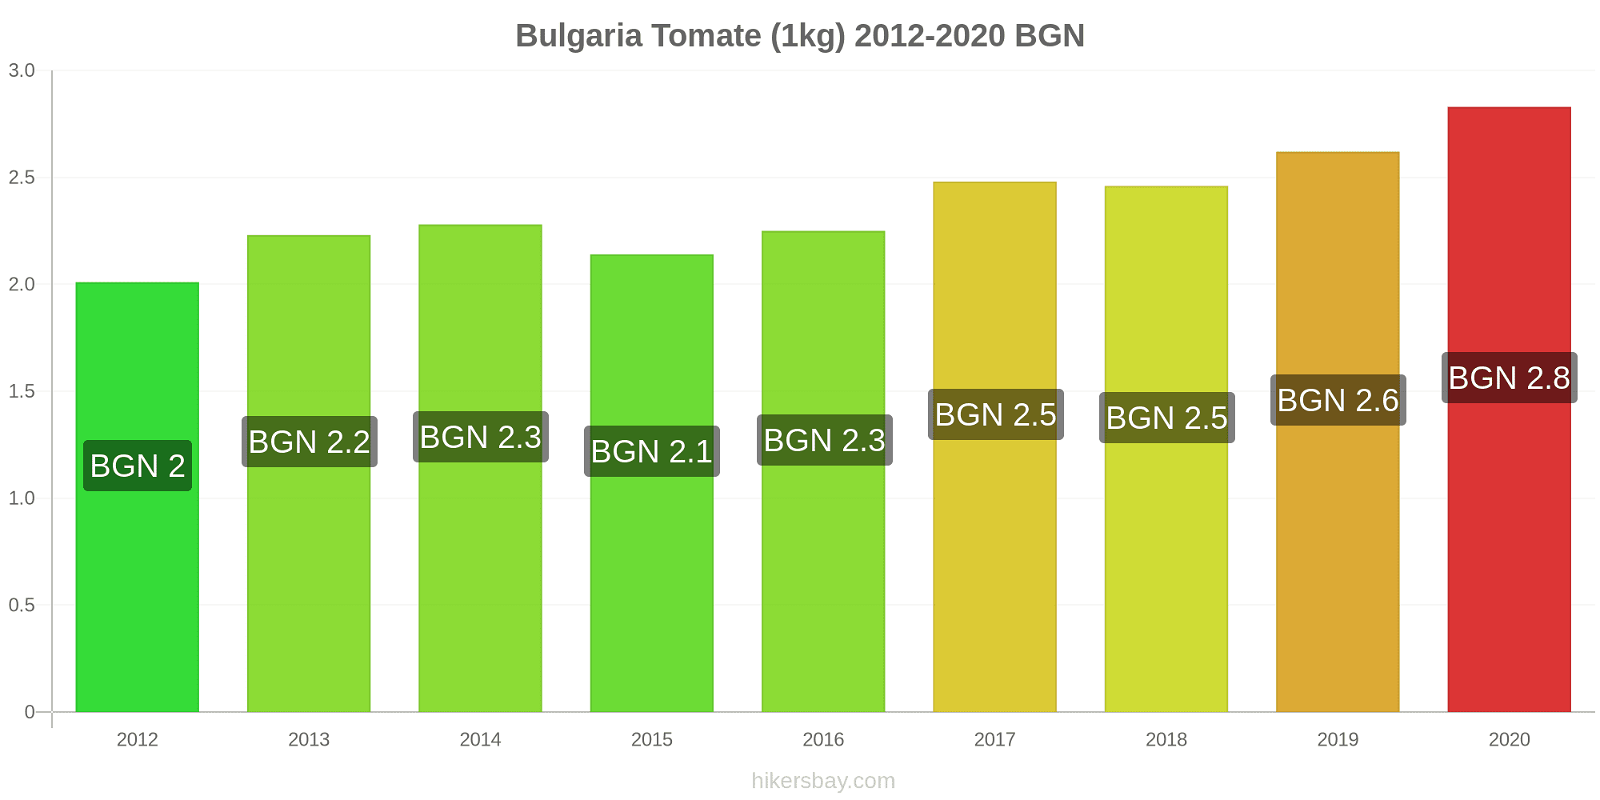 Bulgaria cambios de precios Tomate (1kg) hikersbay.com